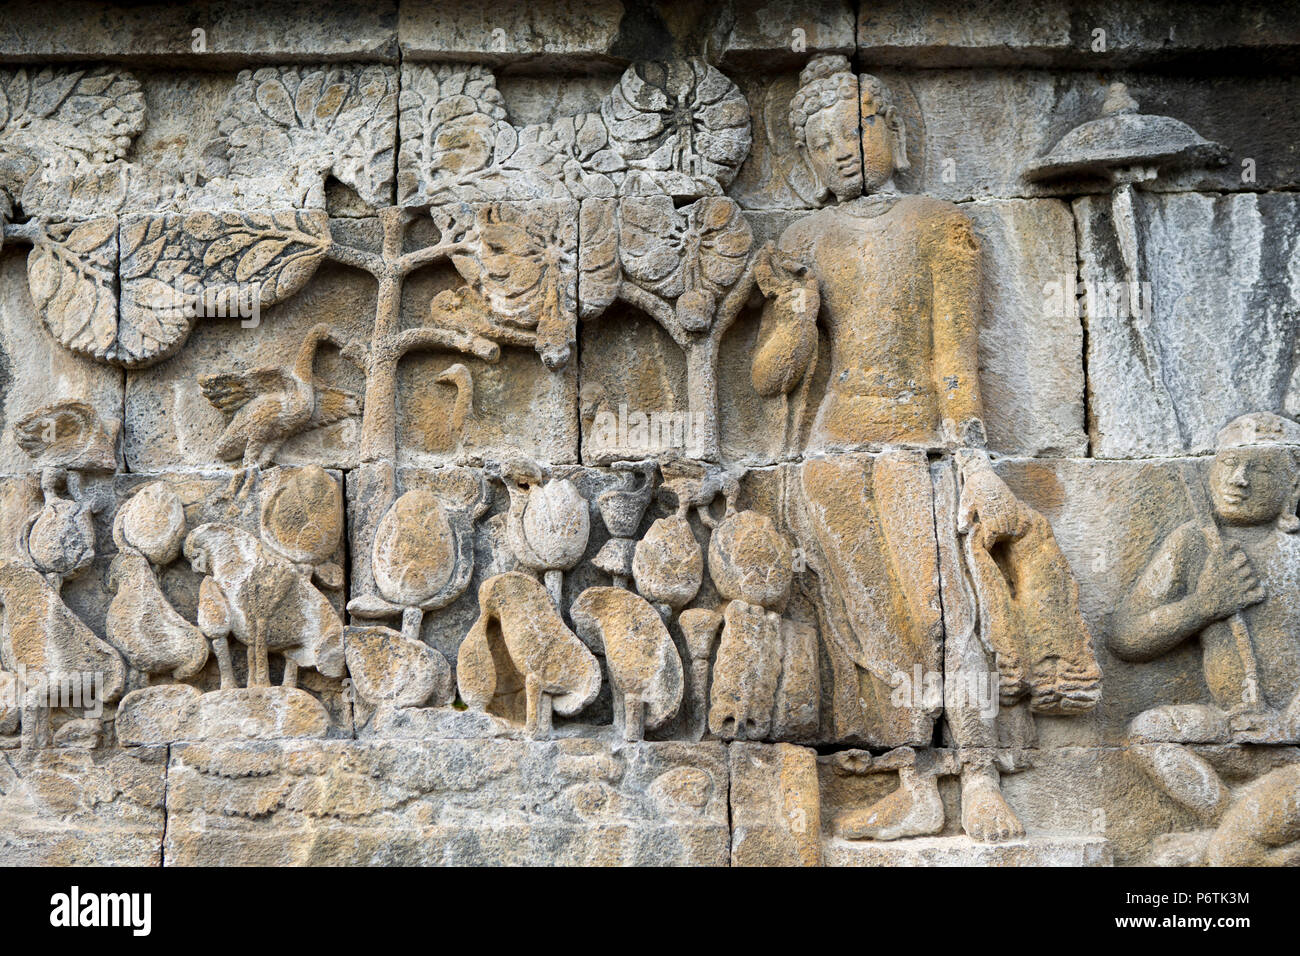 Asia, Indonesia, Java, Yogyakarta, Magelang, il Borobudur, o Barabudur, un 9th-secolo Mahayana tempio buddista e sito Patrimonio Mondiale dell'UNESCO, tempio fregio raffigurante una scena da uno della vita di Buddha Foto Stock